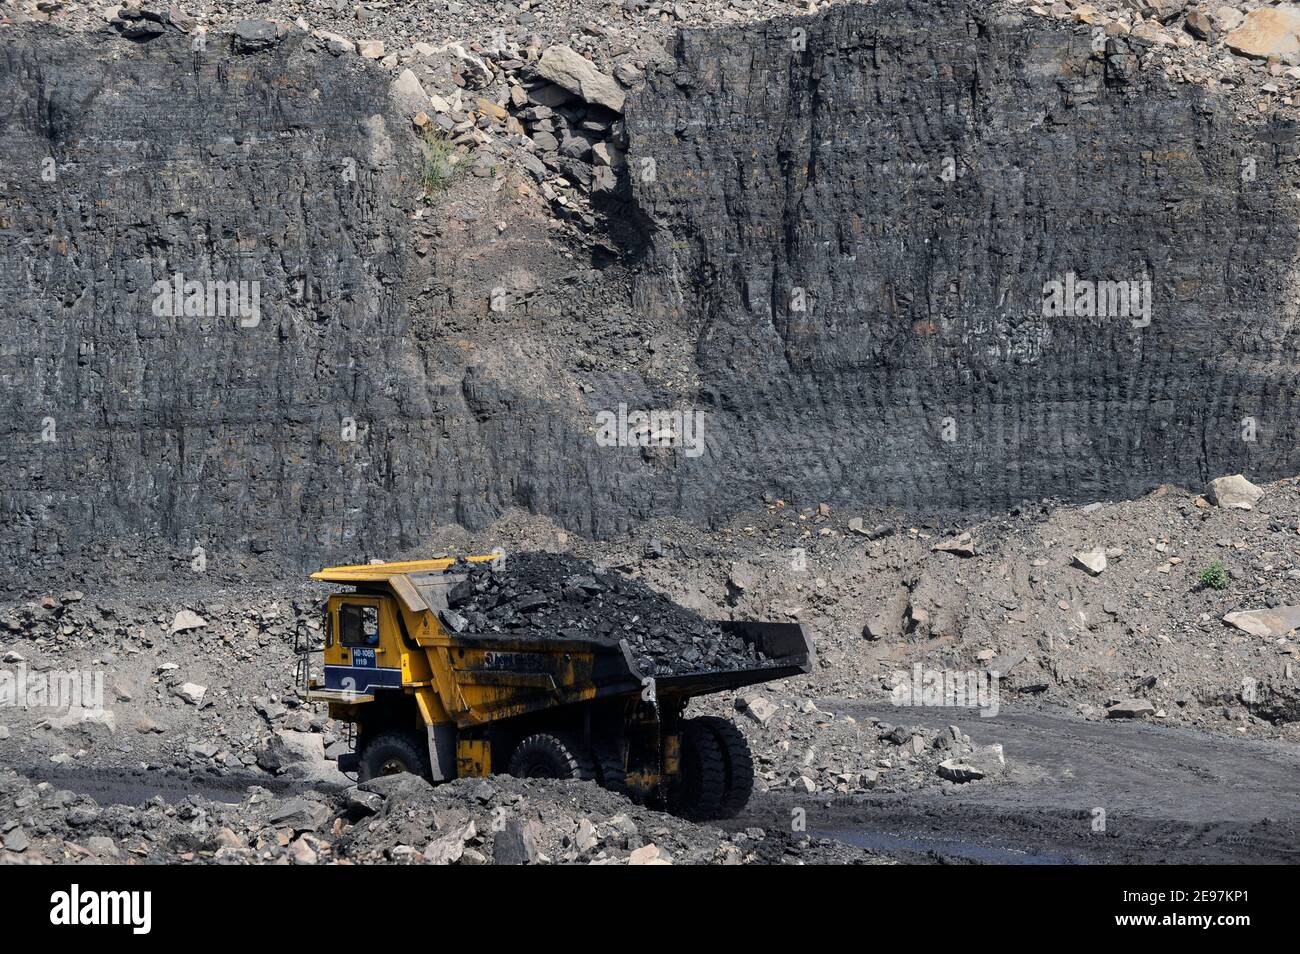 INDE Dhanbad, mine de charbon à ciel ouvert de BCCL Ltd une entreprise de CHARBON INDE, grand tombereau de BEML pour le transport de charbon de la mine / INDIEN Dhanbad , offenser Kohle Tagebau von BCCL Ltd. Ein Tochterunternehmen von Coal India Banque D'Images